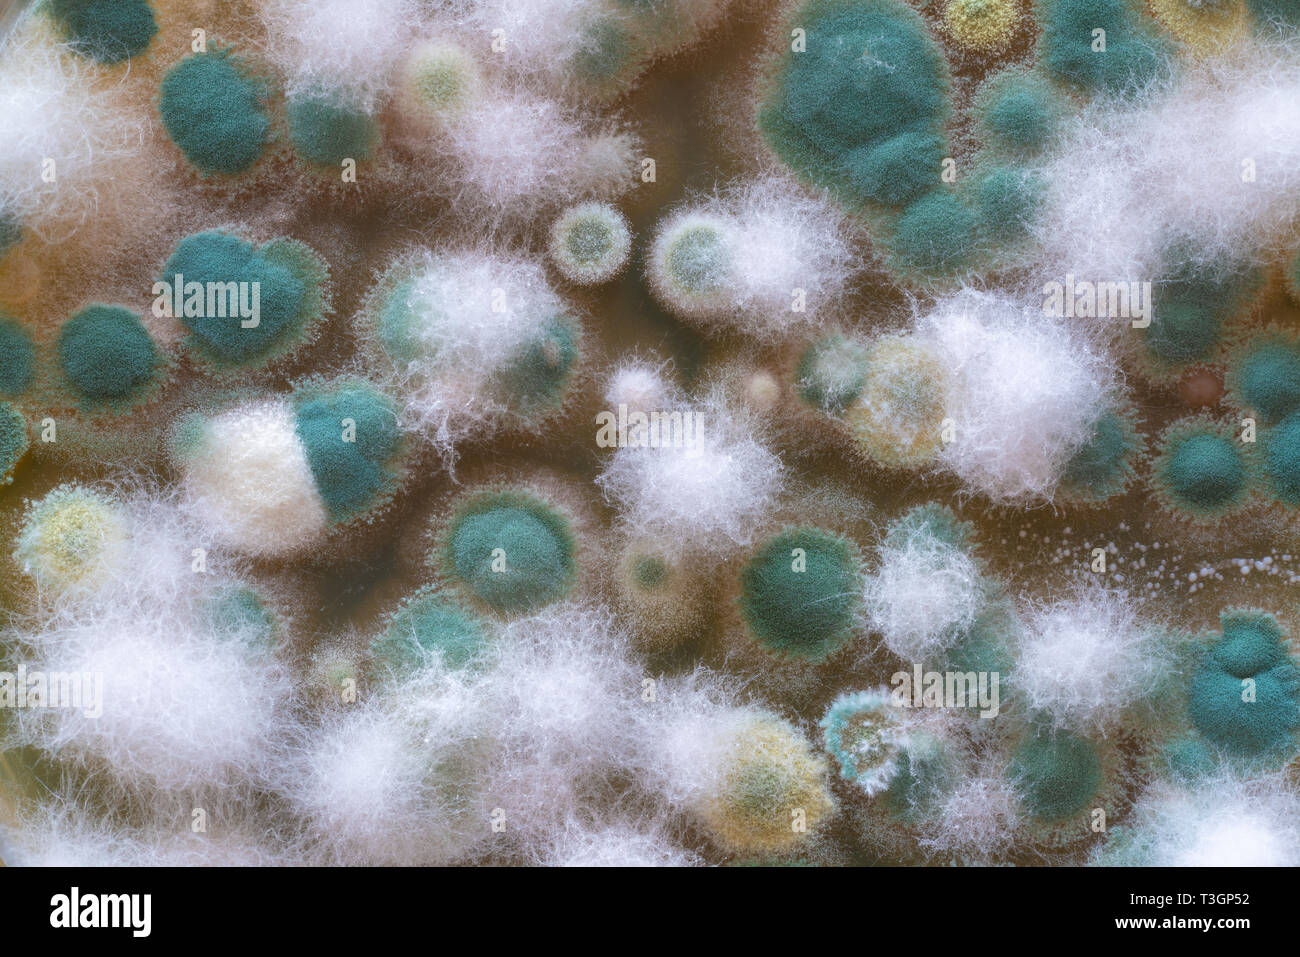 Les colonies de champignons et bactéries sur agar dans une boîte de Petri Banque D'Images